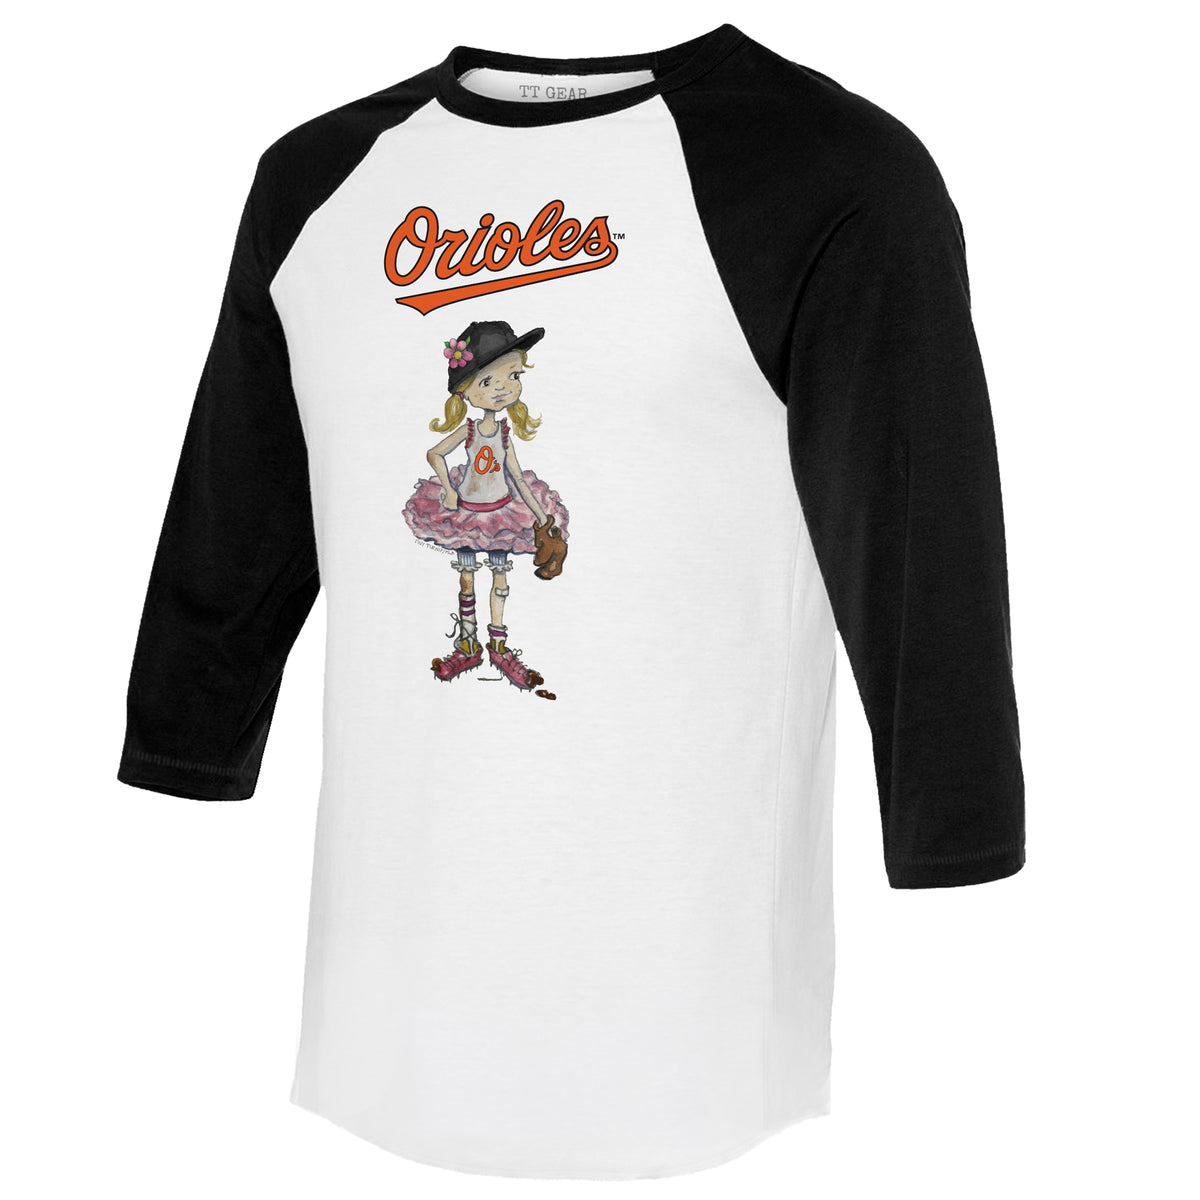 GIRLS - sz M 10-12 TEXAS RANGERS MLB t shirt, youth tshirt baseball fan  apparel